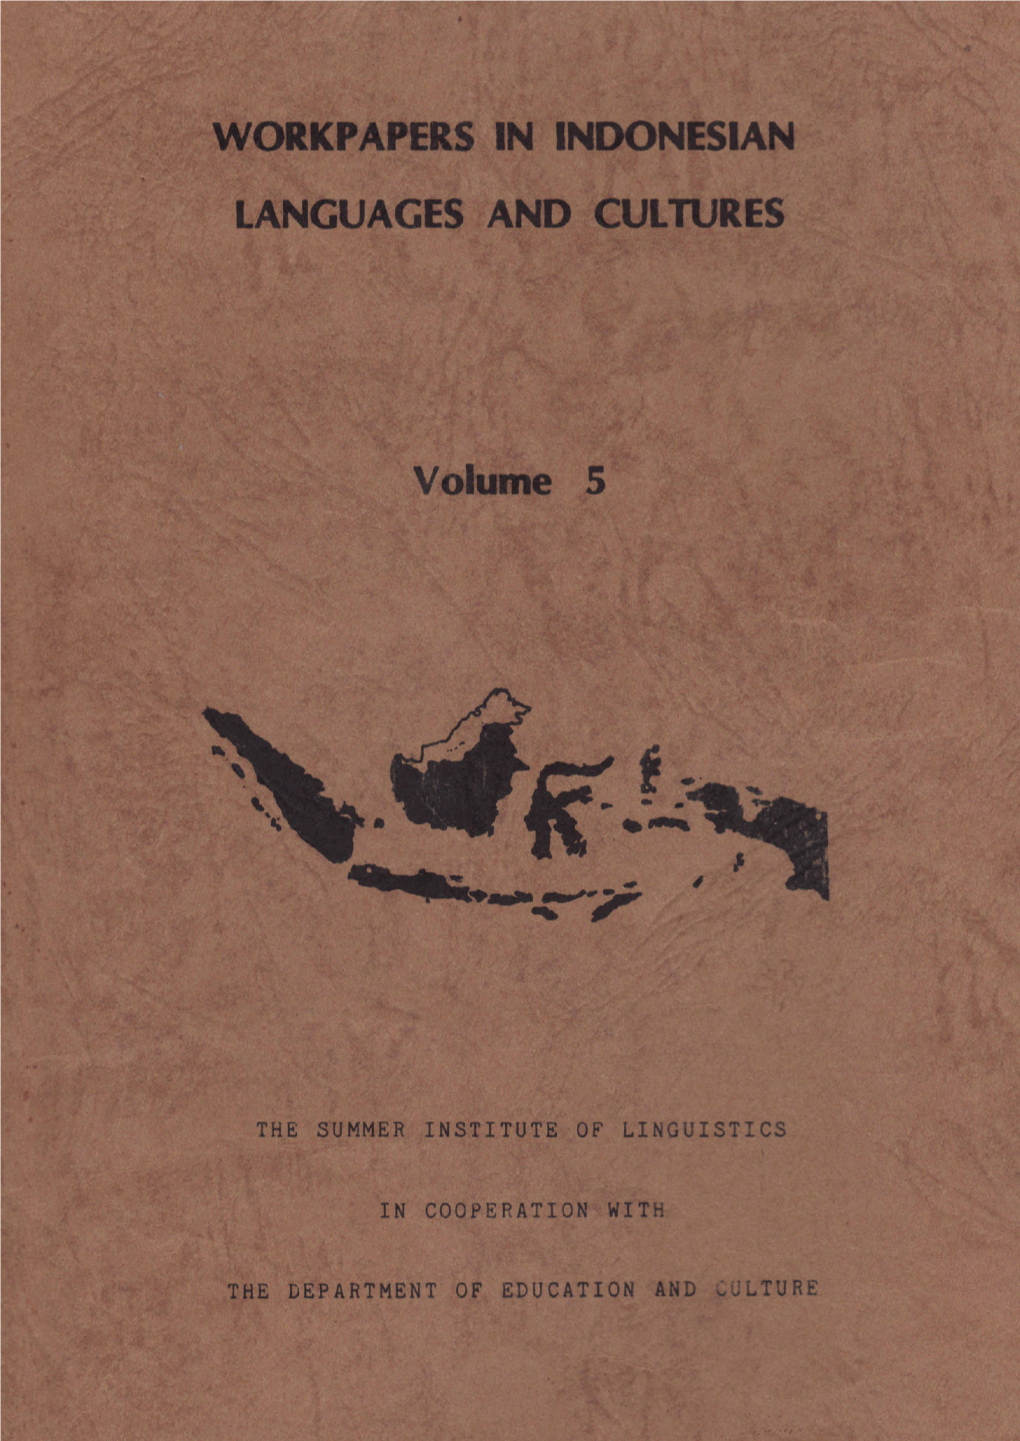 South Sulawesi Sociolinguistic Surveys 1983-1987